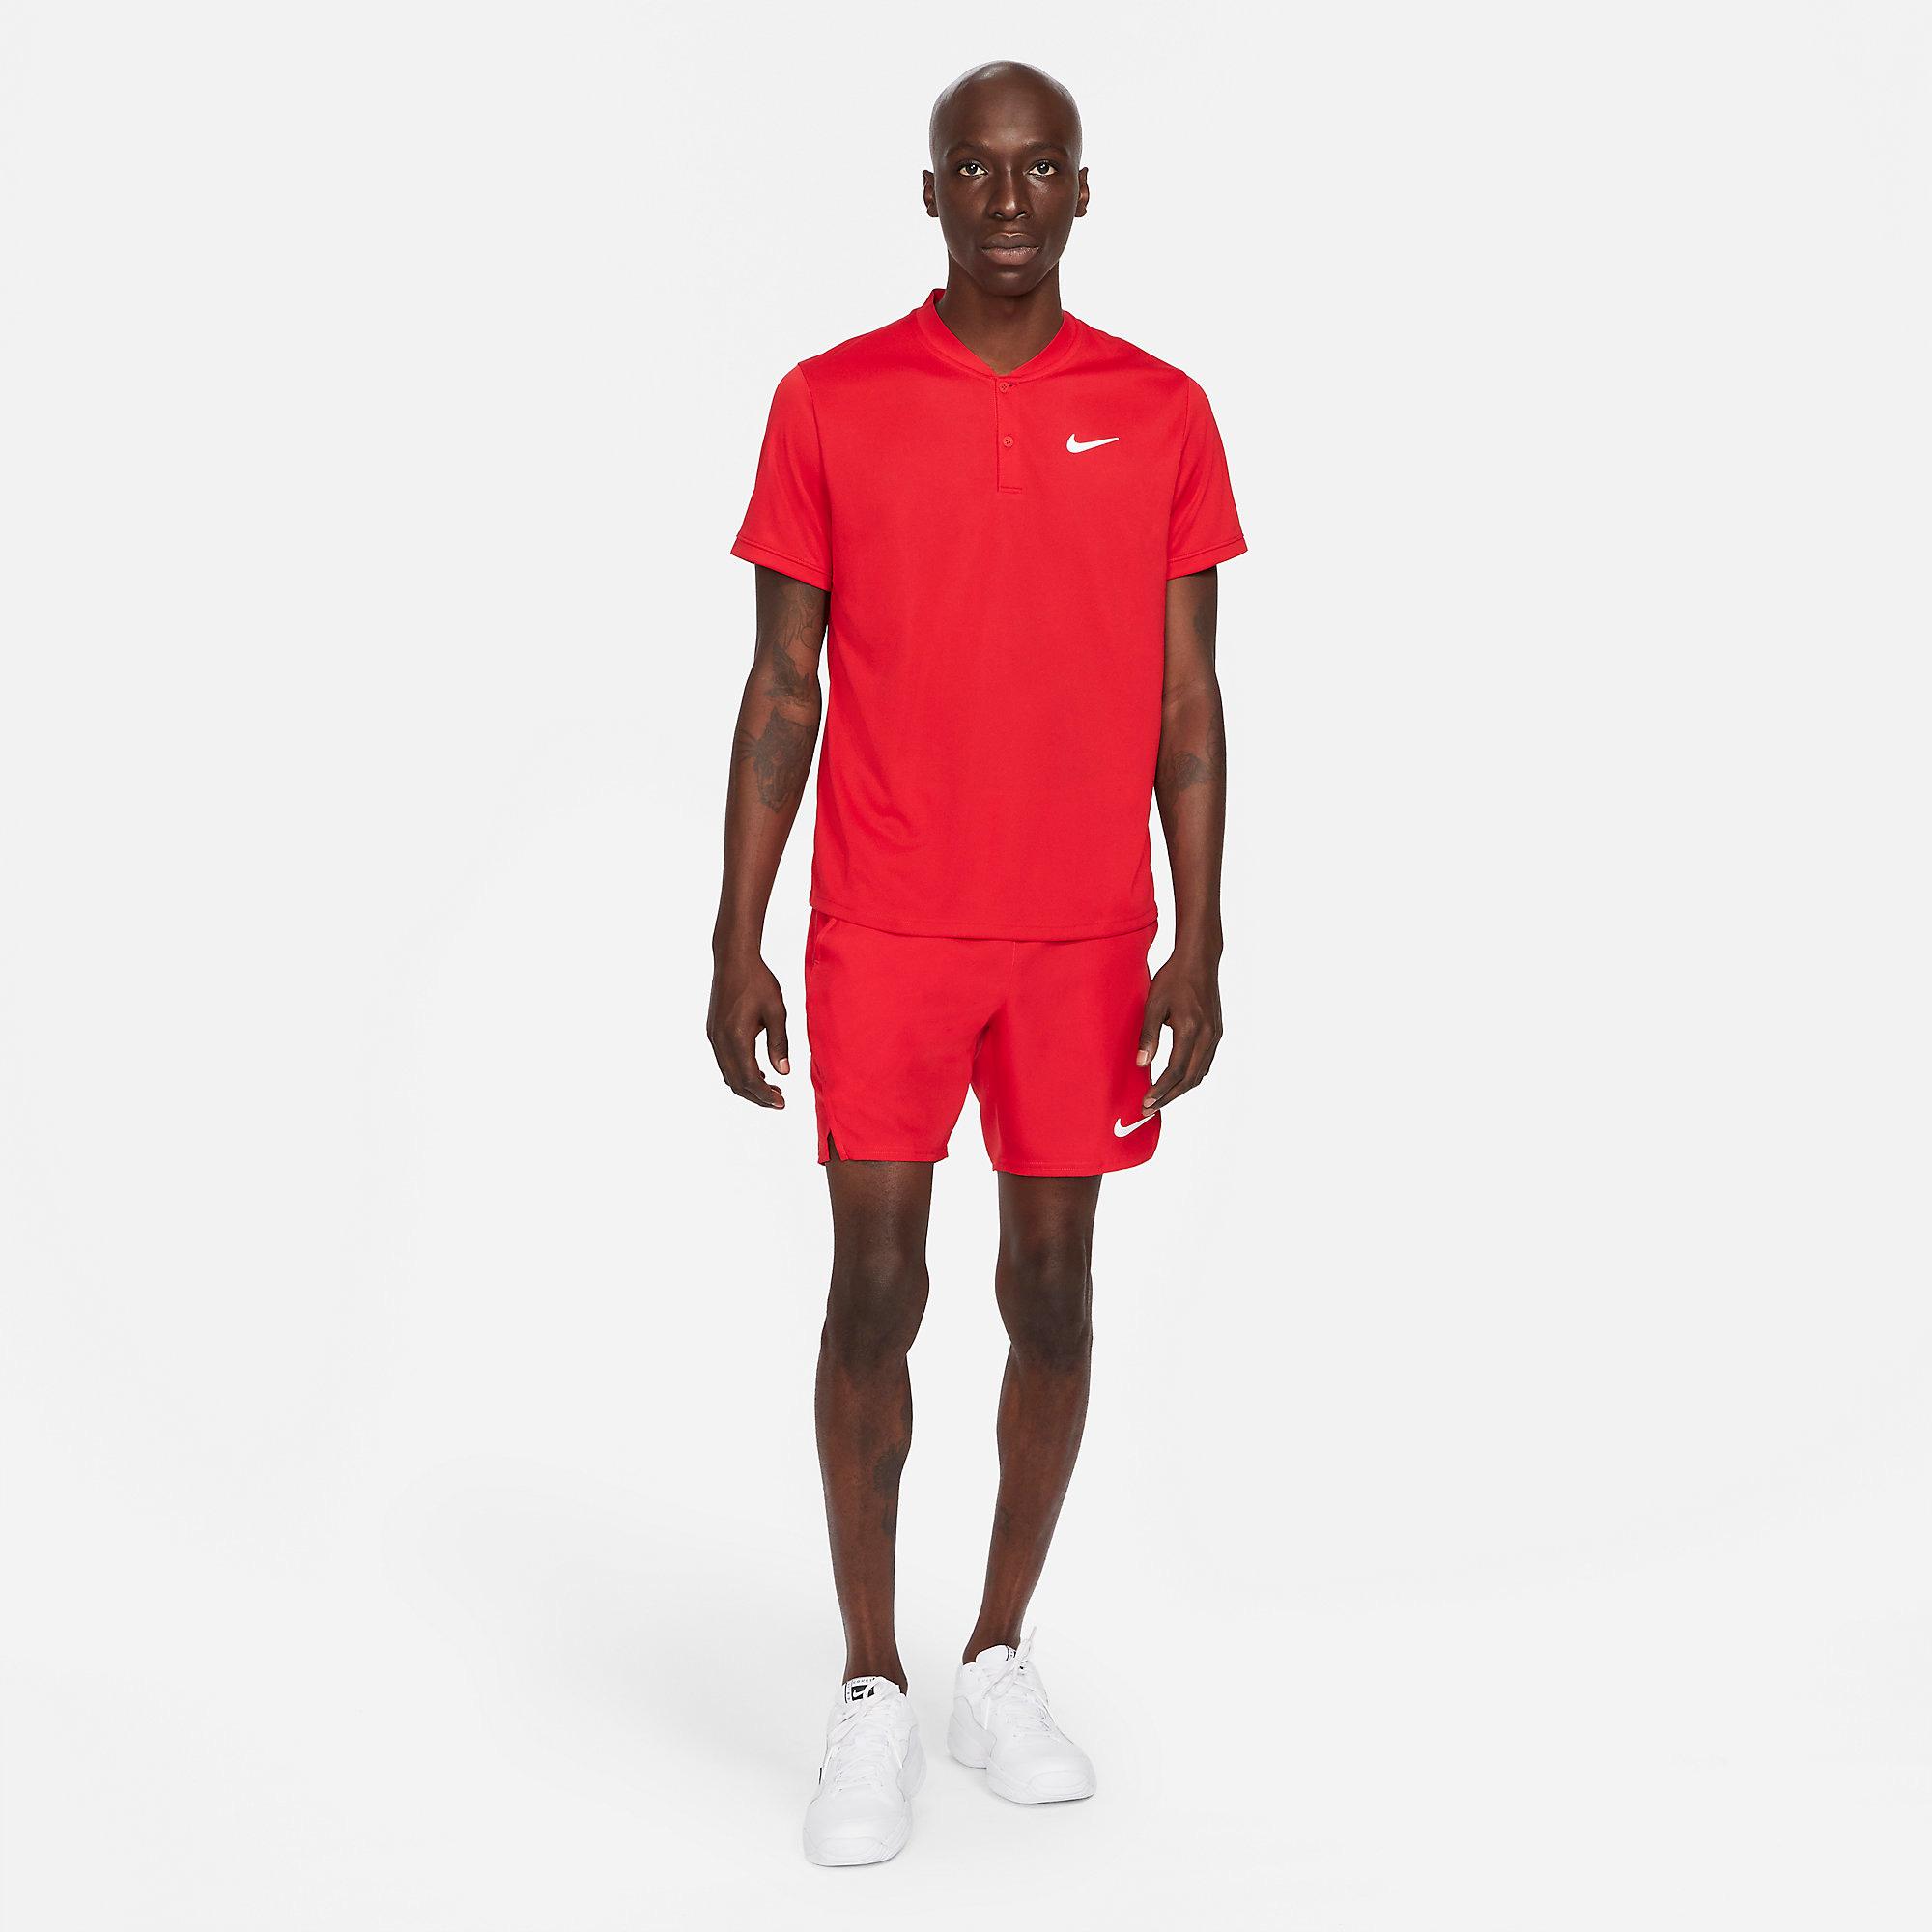 Nike Mens Dri-FIT Polo - Gym Red - Tennisnuts.com